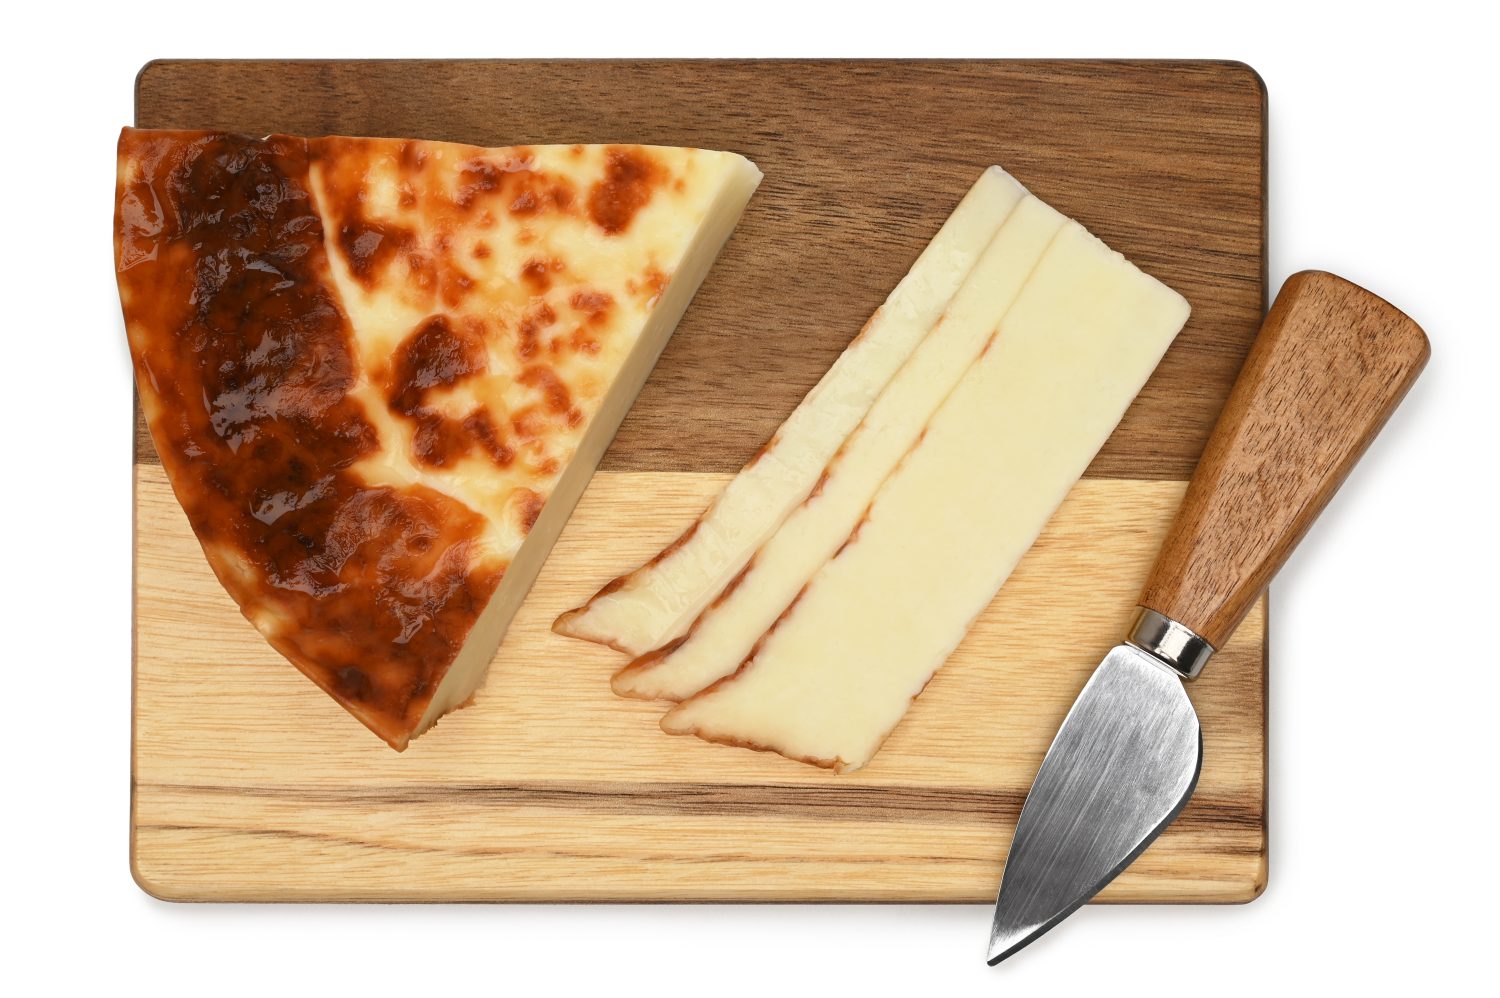 Leipajuusto, formaggio cigolante finlandese (formaggio per pane) con coltello da formaggio su una tavola di legno su sfondo bianco